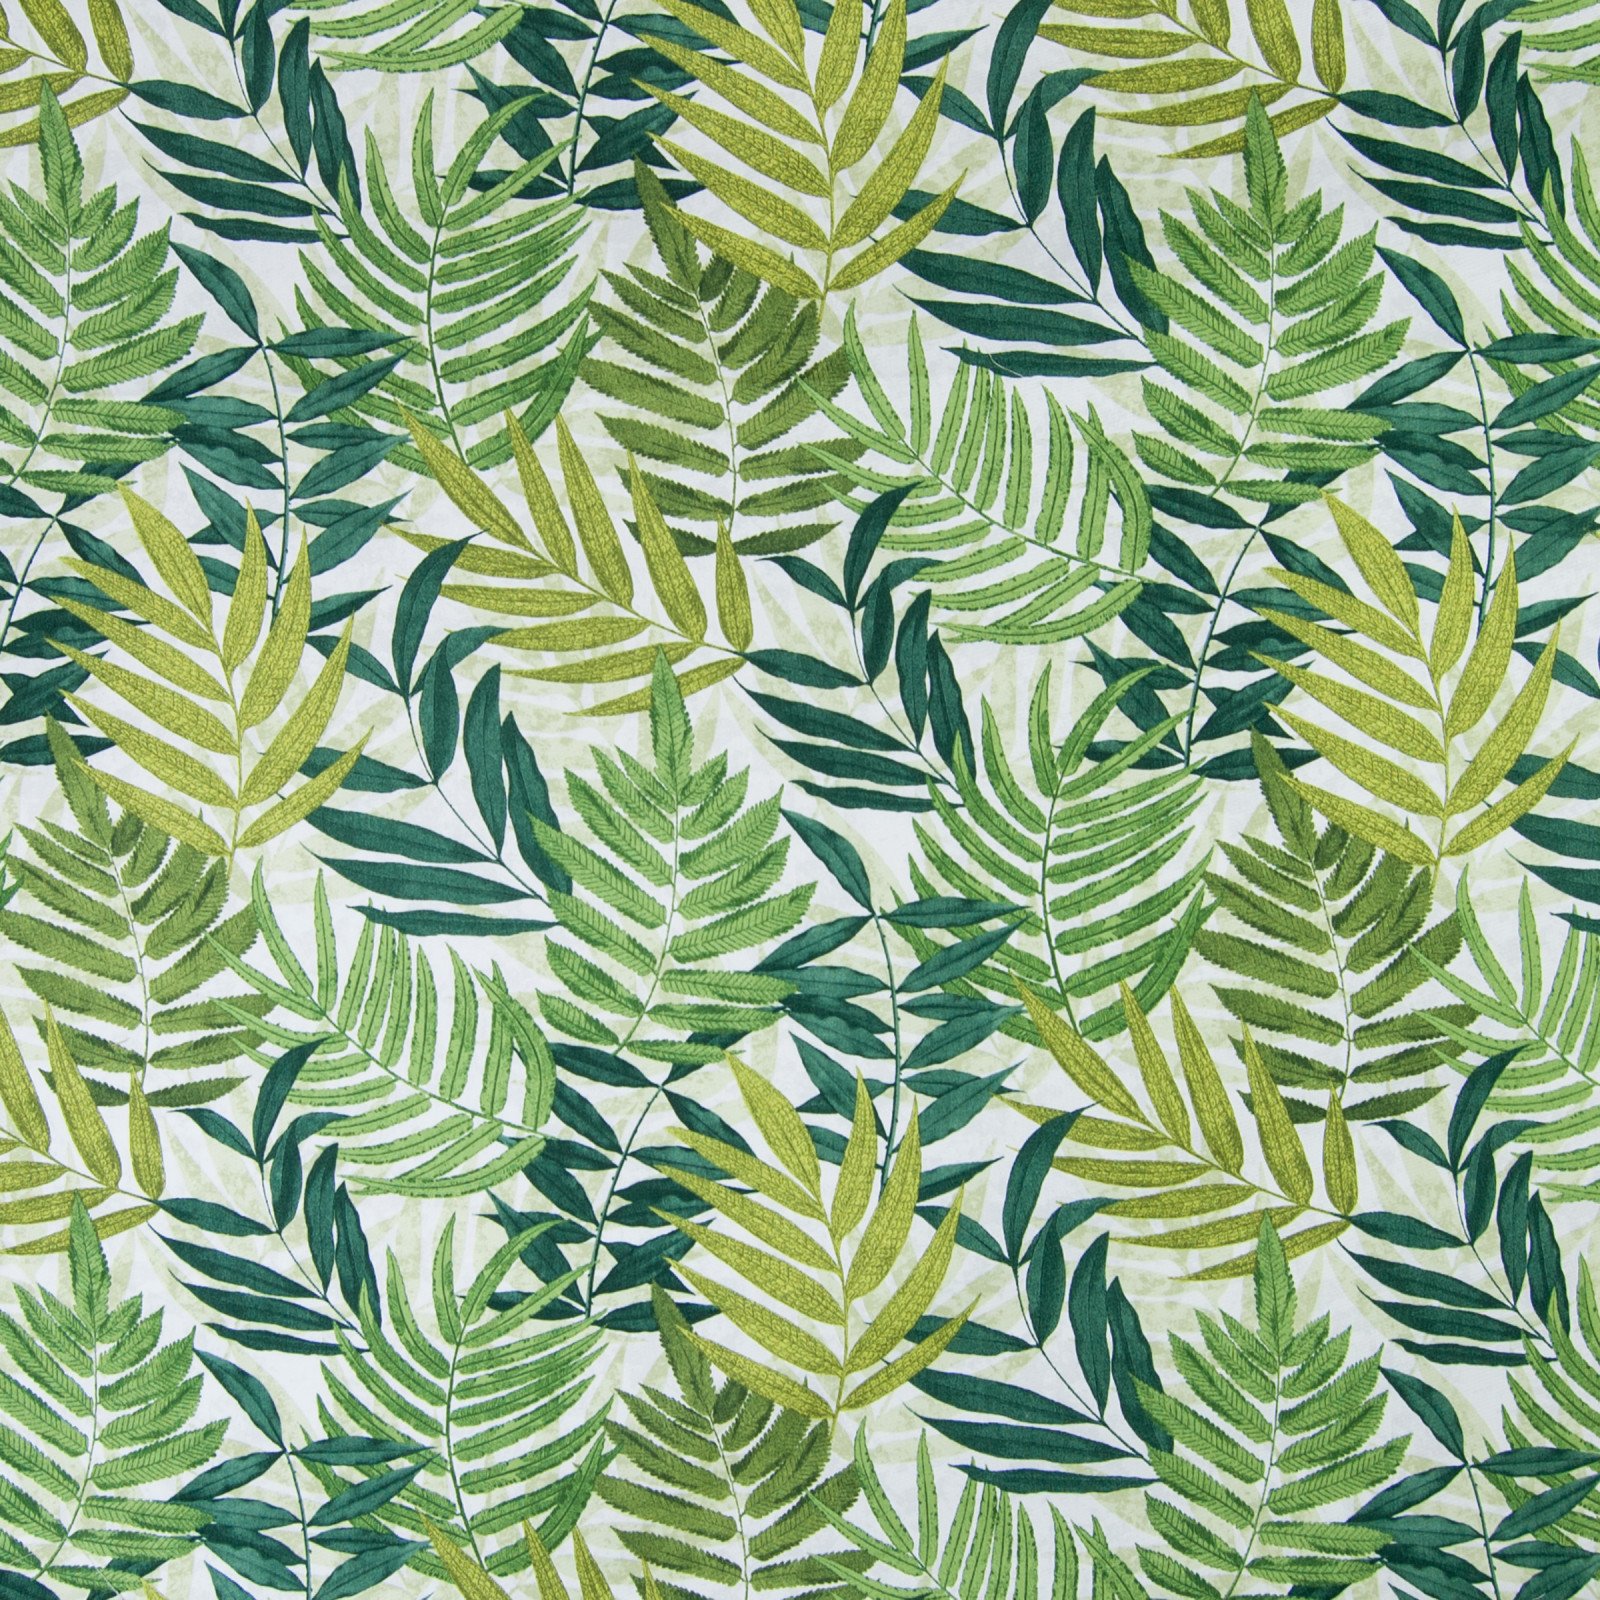 Ткань зеленая с цветами. Ткань с тропическим принтом. Ткань с растительным принтом. Растительный принт на ткани. Ткани в тропическом стиле.